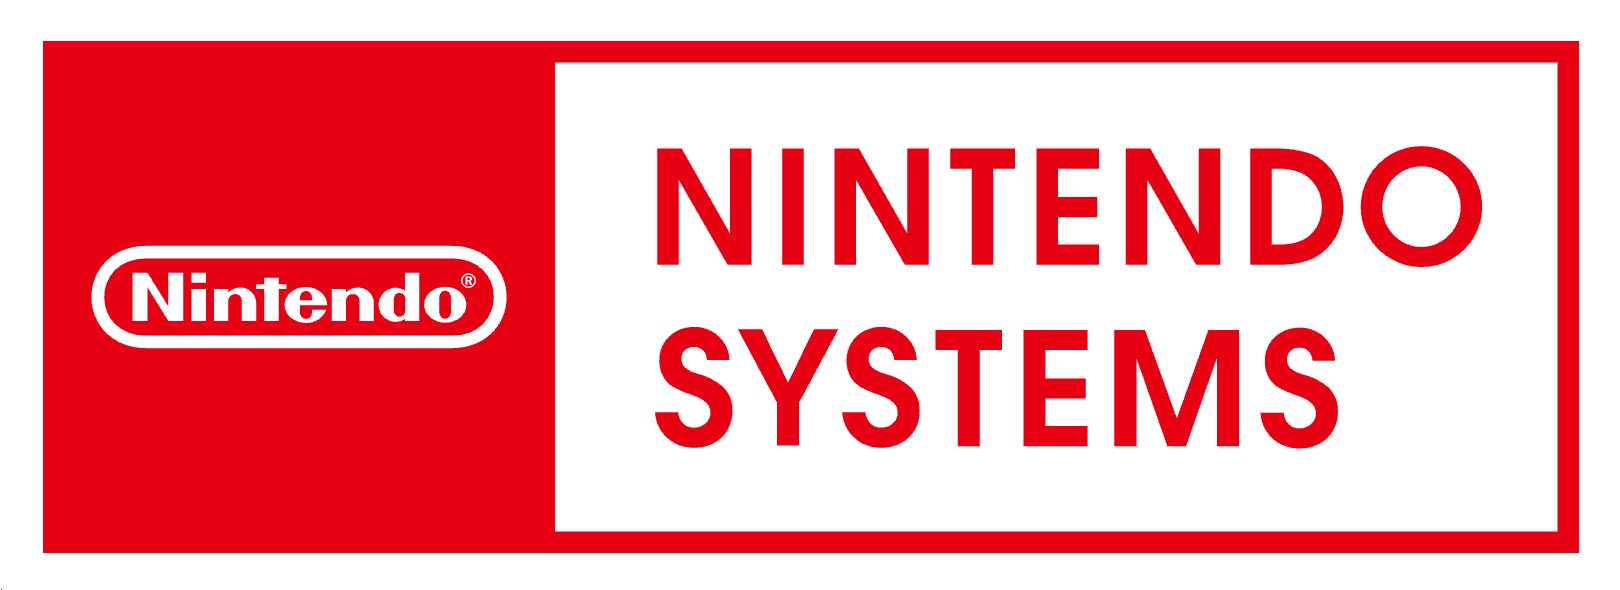 Nintendo Systems inicia operaciones